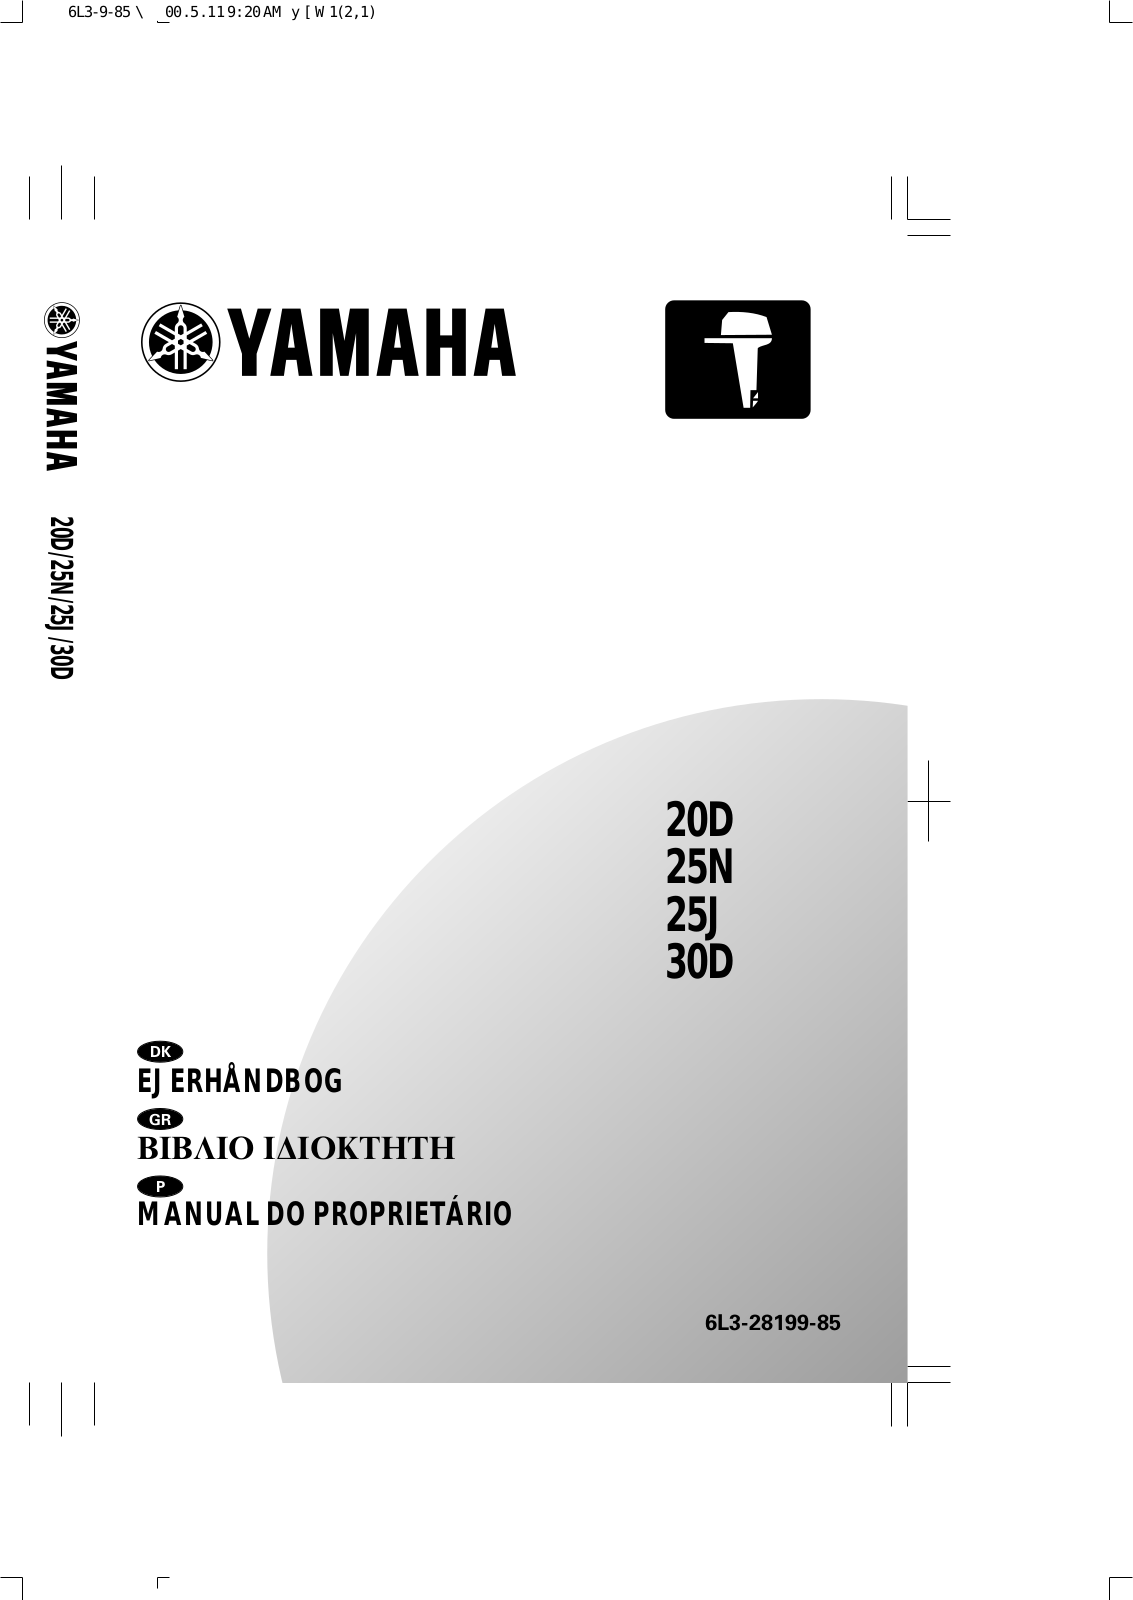 Yamaha 20D, 25N, 25J, 30D User Manual